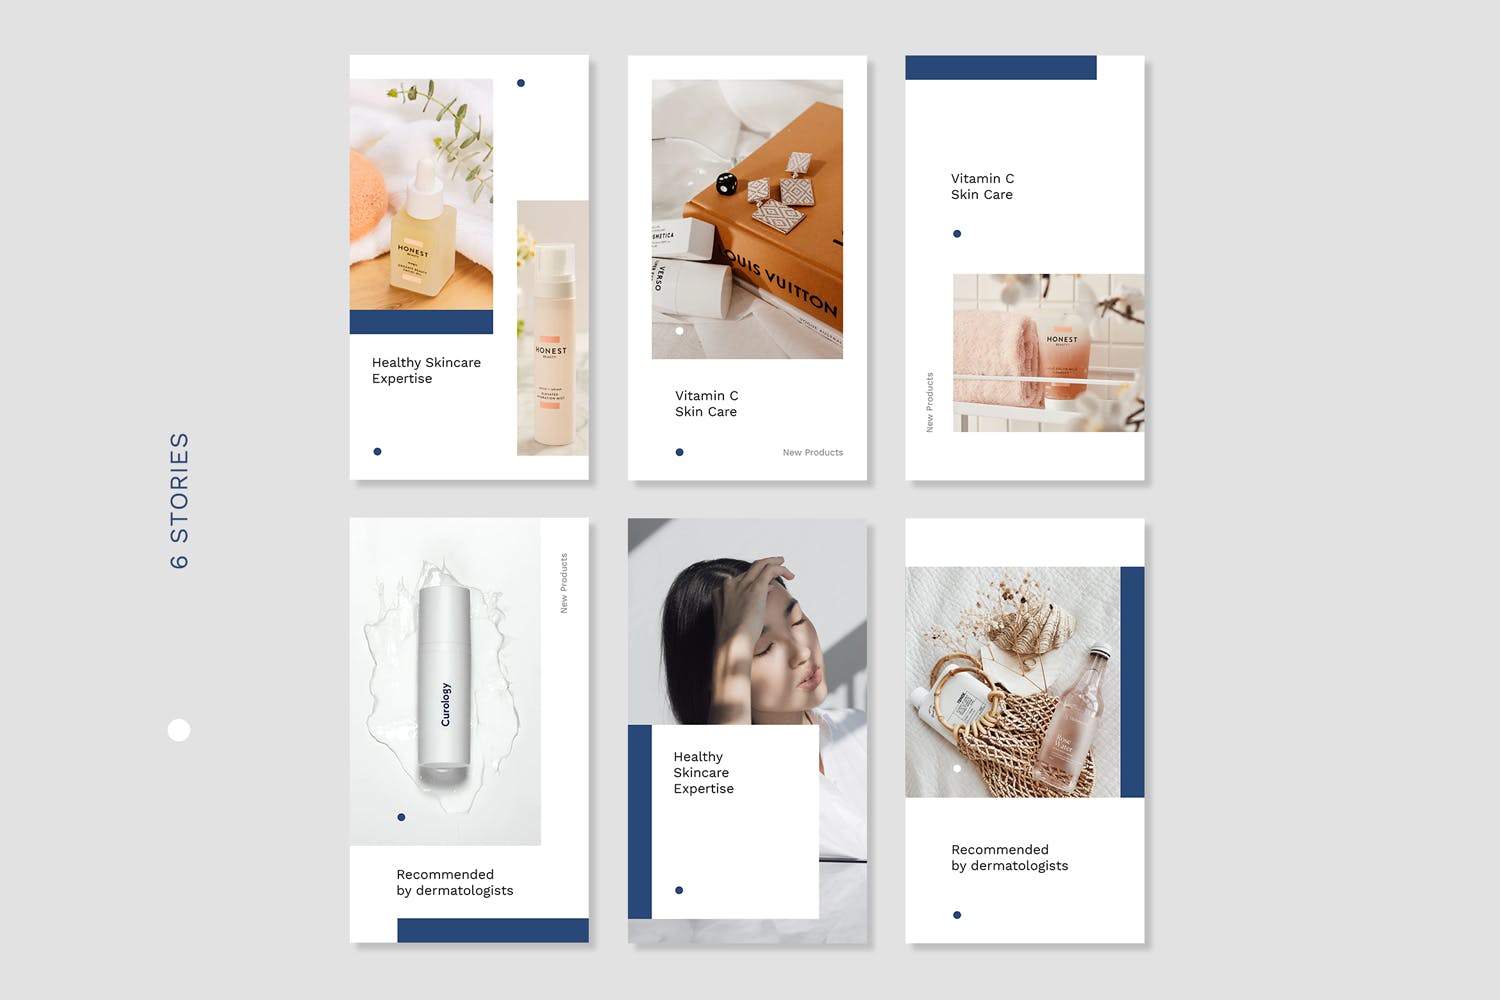 美妆品牌活动推广Instagram社交媒体设计素材包 Instagram Stories Kit (Vol.48)设计素材模板